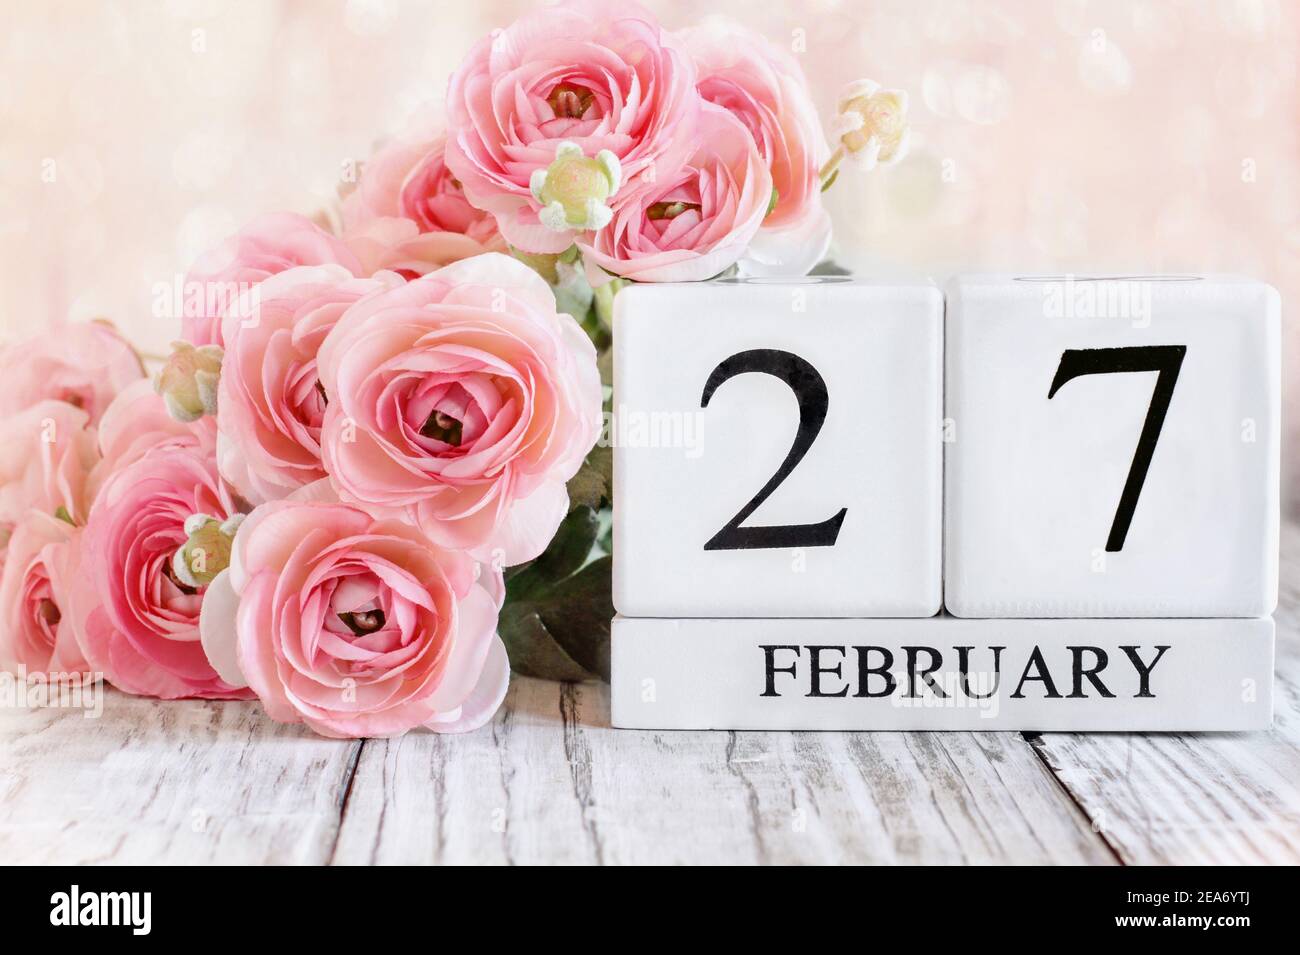 Weiße Holz Kalenderblöcke mit dem Datum Februar 27th und rosa Ranunculus Blumen über einem Holztisch. Selektiver Fokus mit unscharfem Hintergrund. Stockfoto